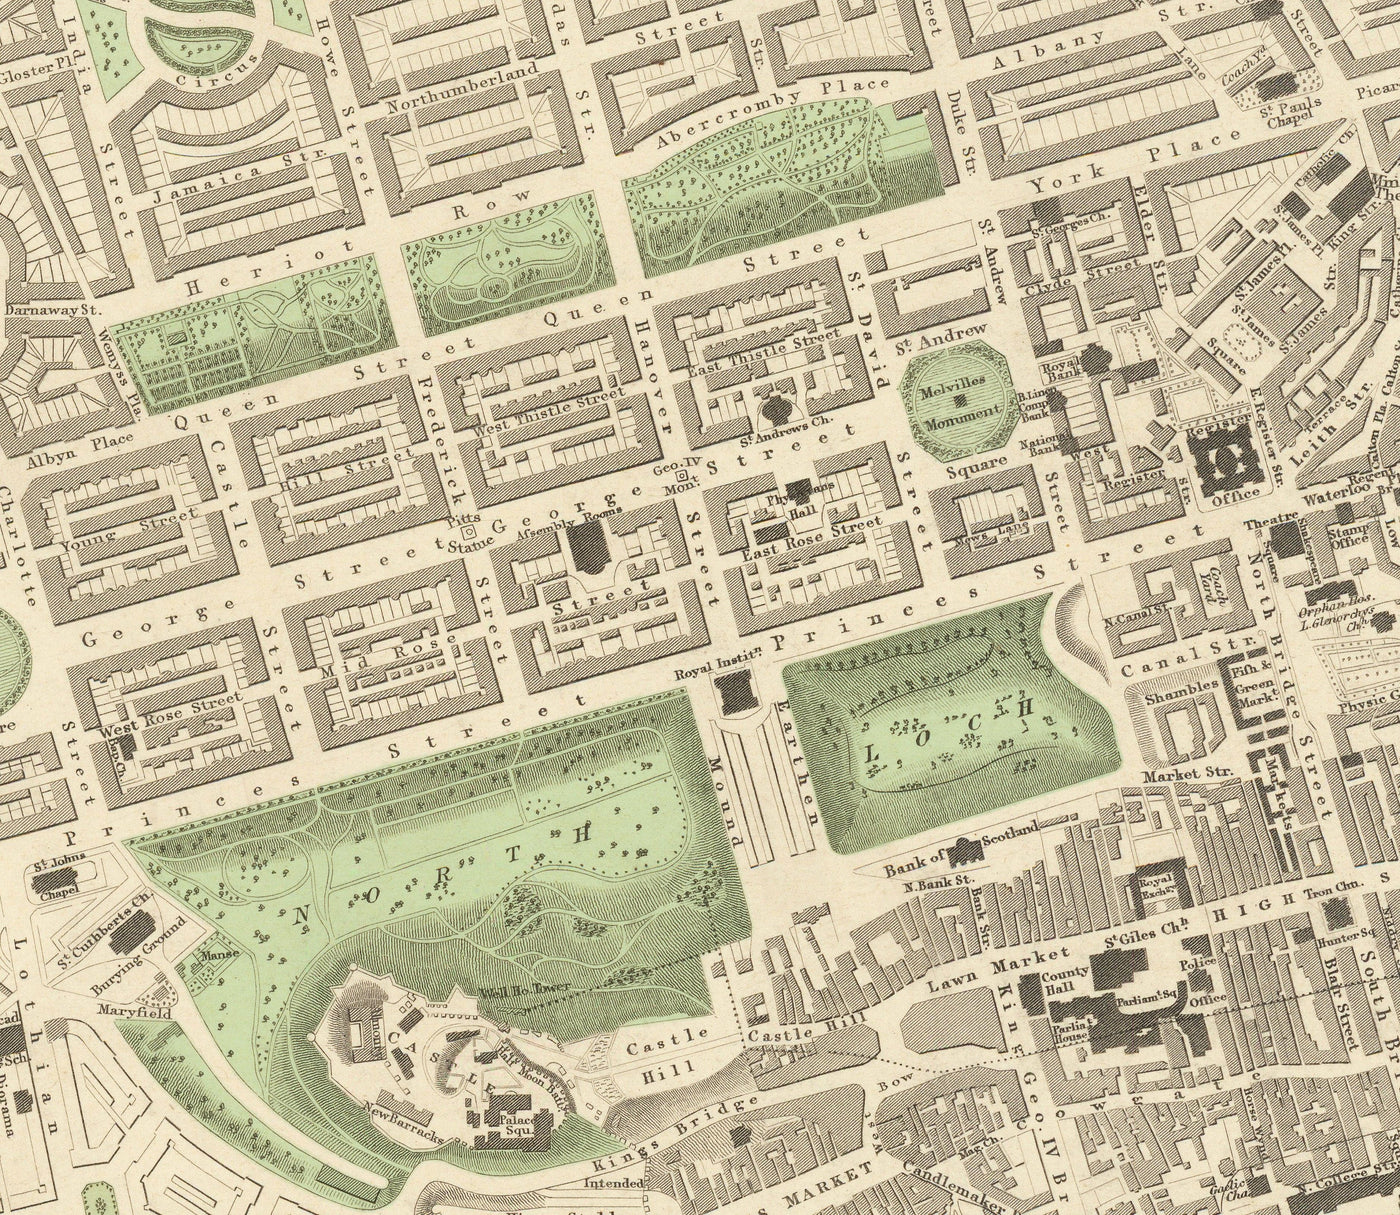 Mapa antiguo de Edimburgo, Escocia en 1834 por WB Clark